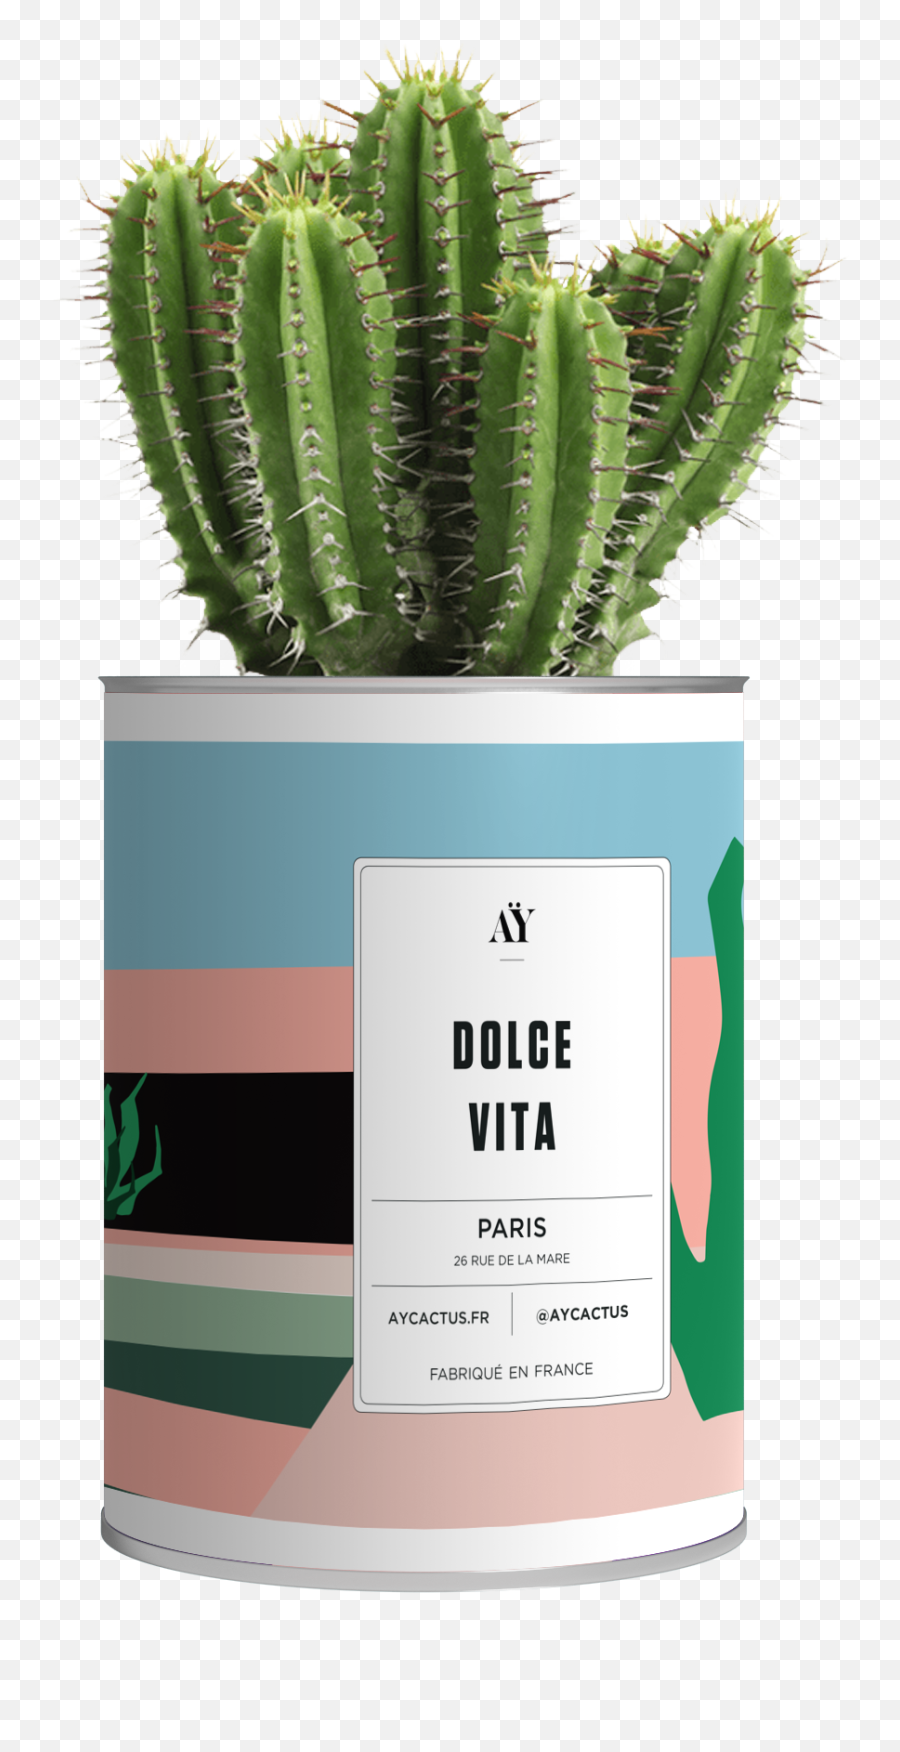 Dolce Vita - Cactus Translucent Background Emoji,Cactus Emojis